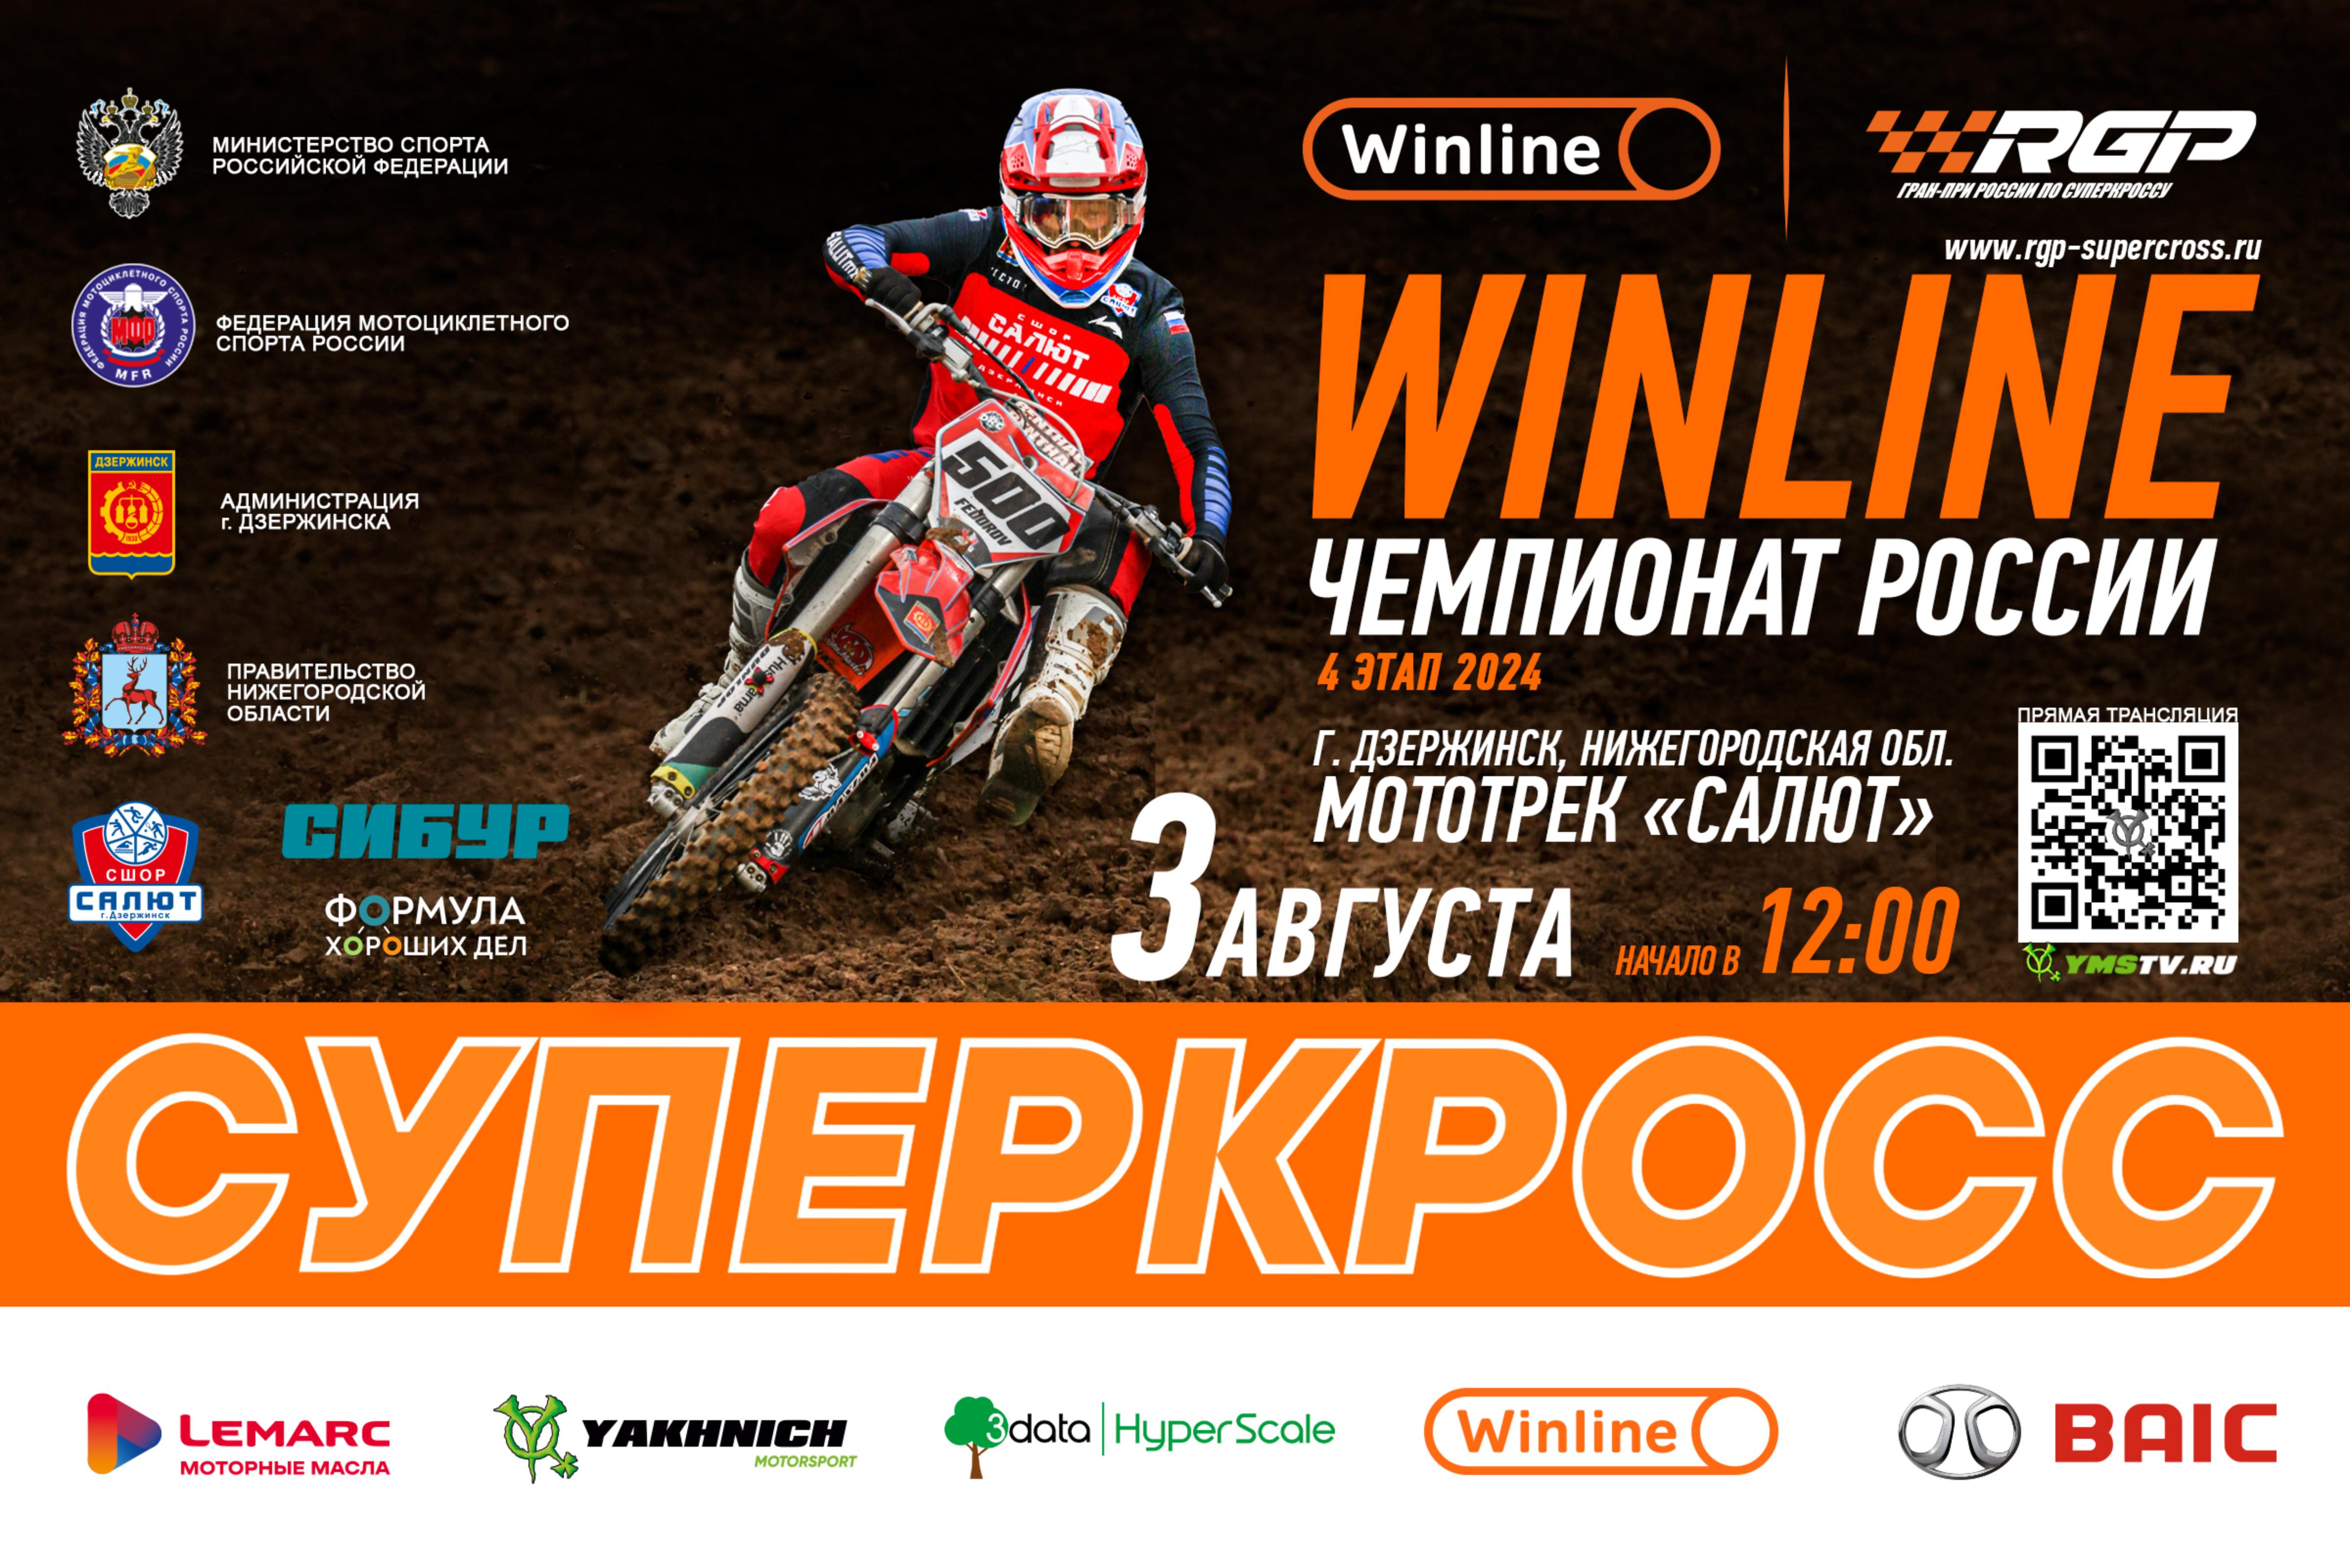 Дзержинск примет четвёртый этап Winline Чемпионата России по суперкроссу